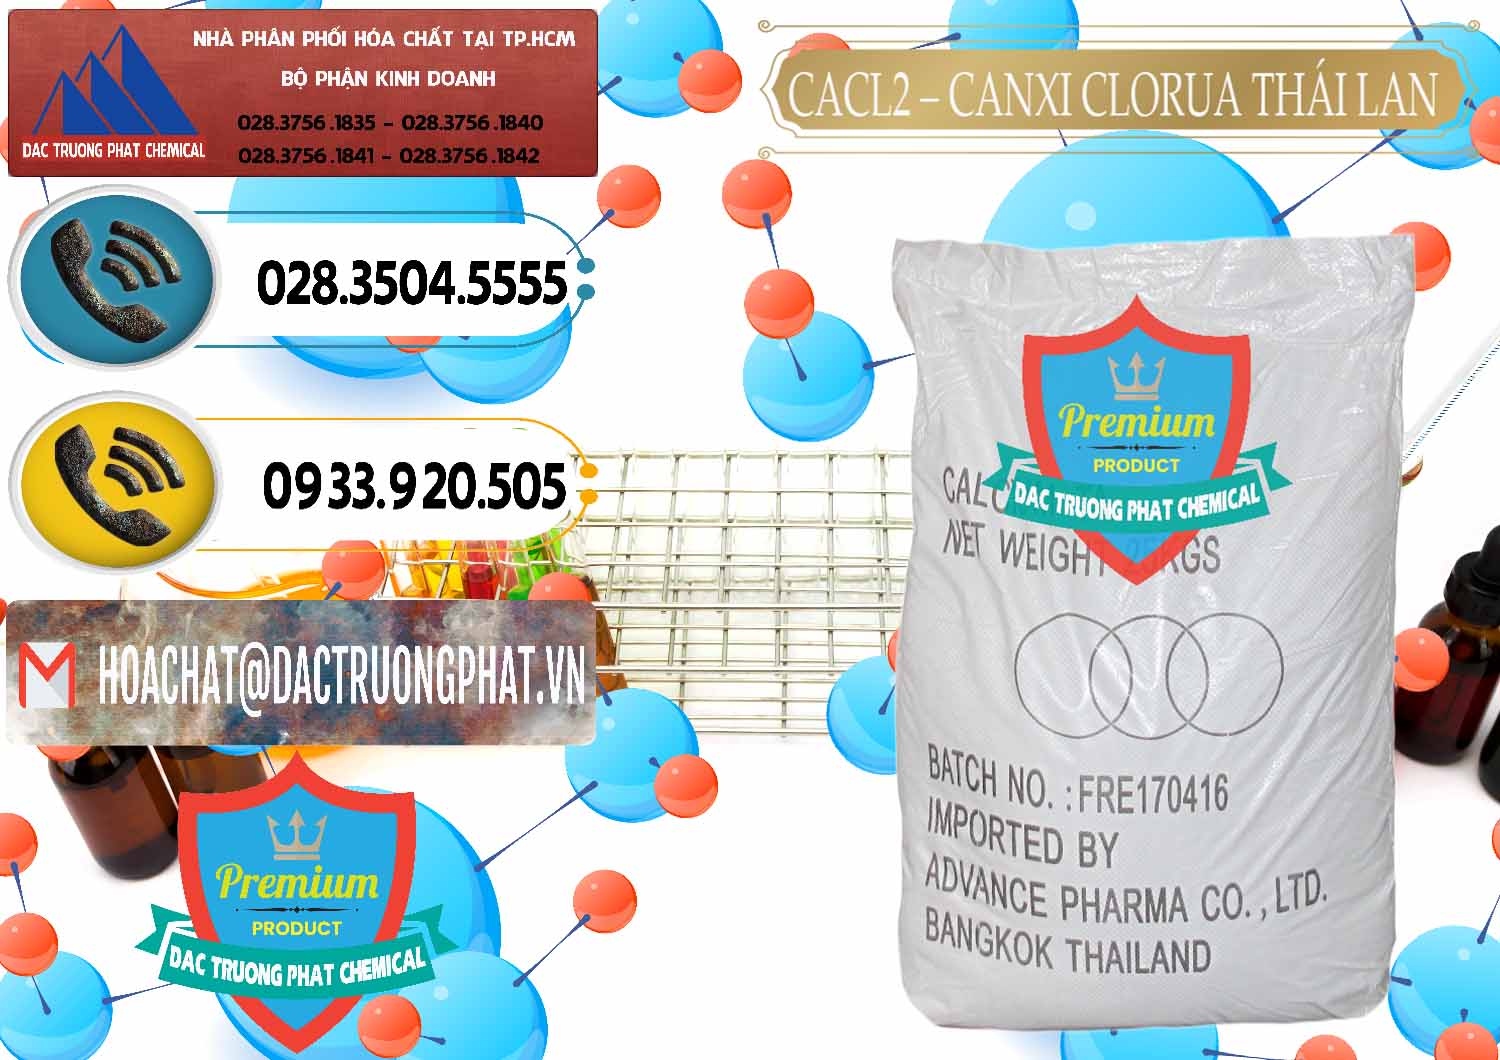 Đơn vị chuyên bán và phân phối CaCl2 – Canxi Clorua 96% Thái Lan - 0042 - Cty chuyên phân phối & kinh doanh hóa chất tại TP.HCM - hoachatdetnhuom.vn